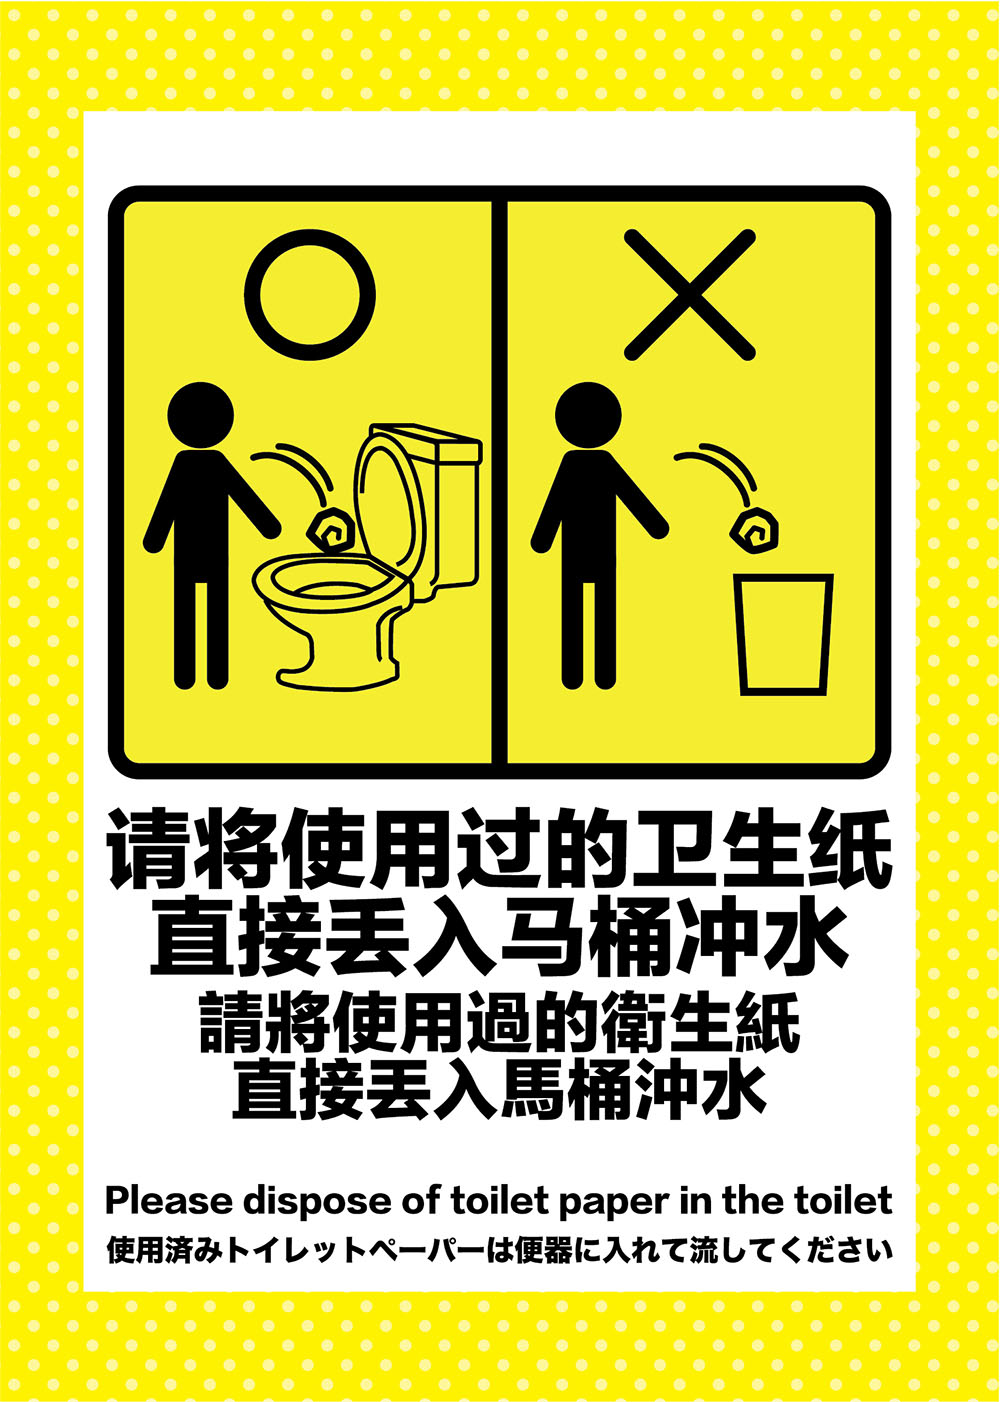 使用済みトイレットペーパーは便器に入れて流してください＝请将使用过的卫生纸直接丢入马桶冲水POP−無料中国語・英語